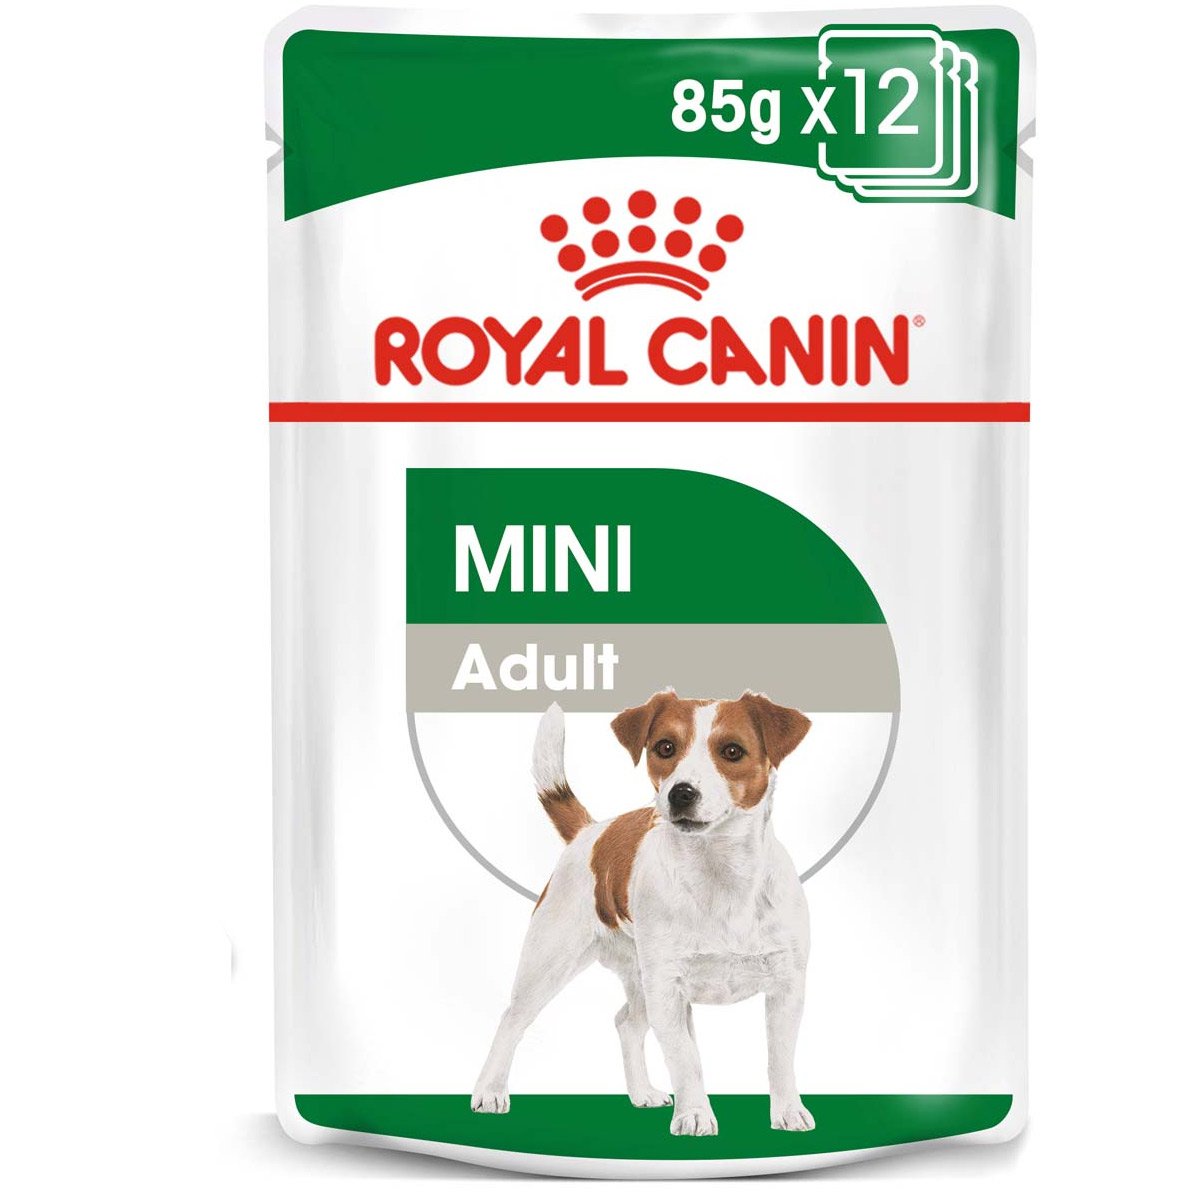 ROYAL CANIN MINI ADULT Nassfutter für ausgewachsene kleine Hunde 12x85g von Royal Canin